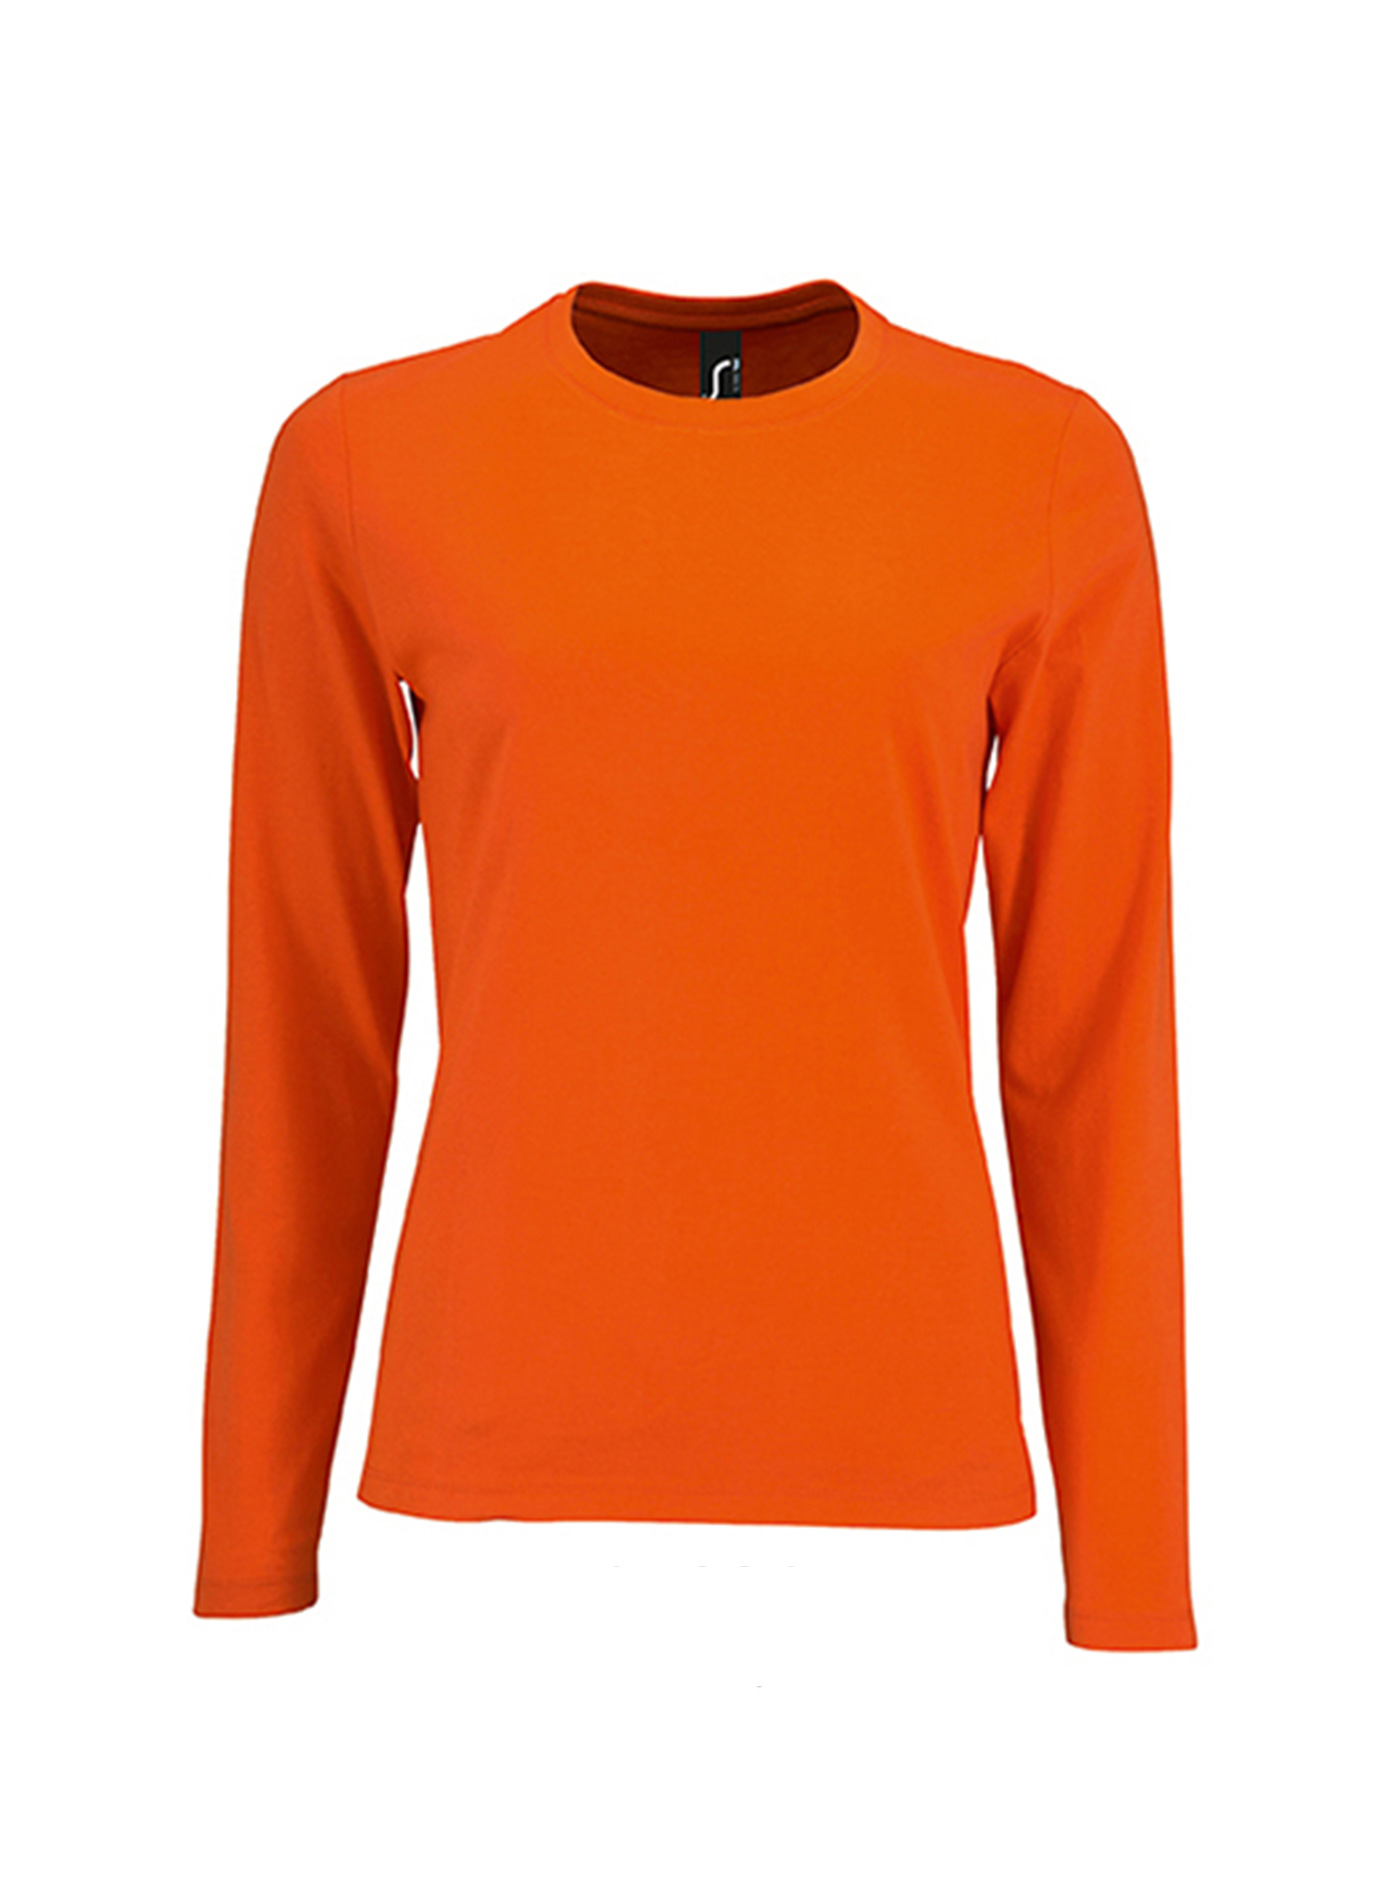 Dámské tričko s dlouhým rukávem SOL´S Imperial - Zářivá oranžová L